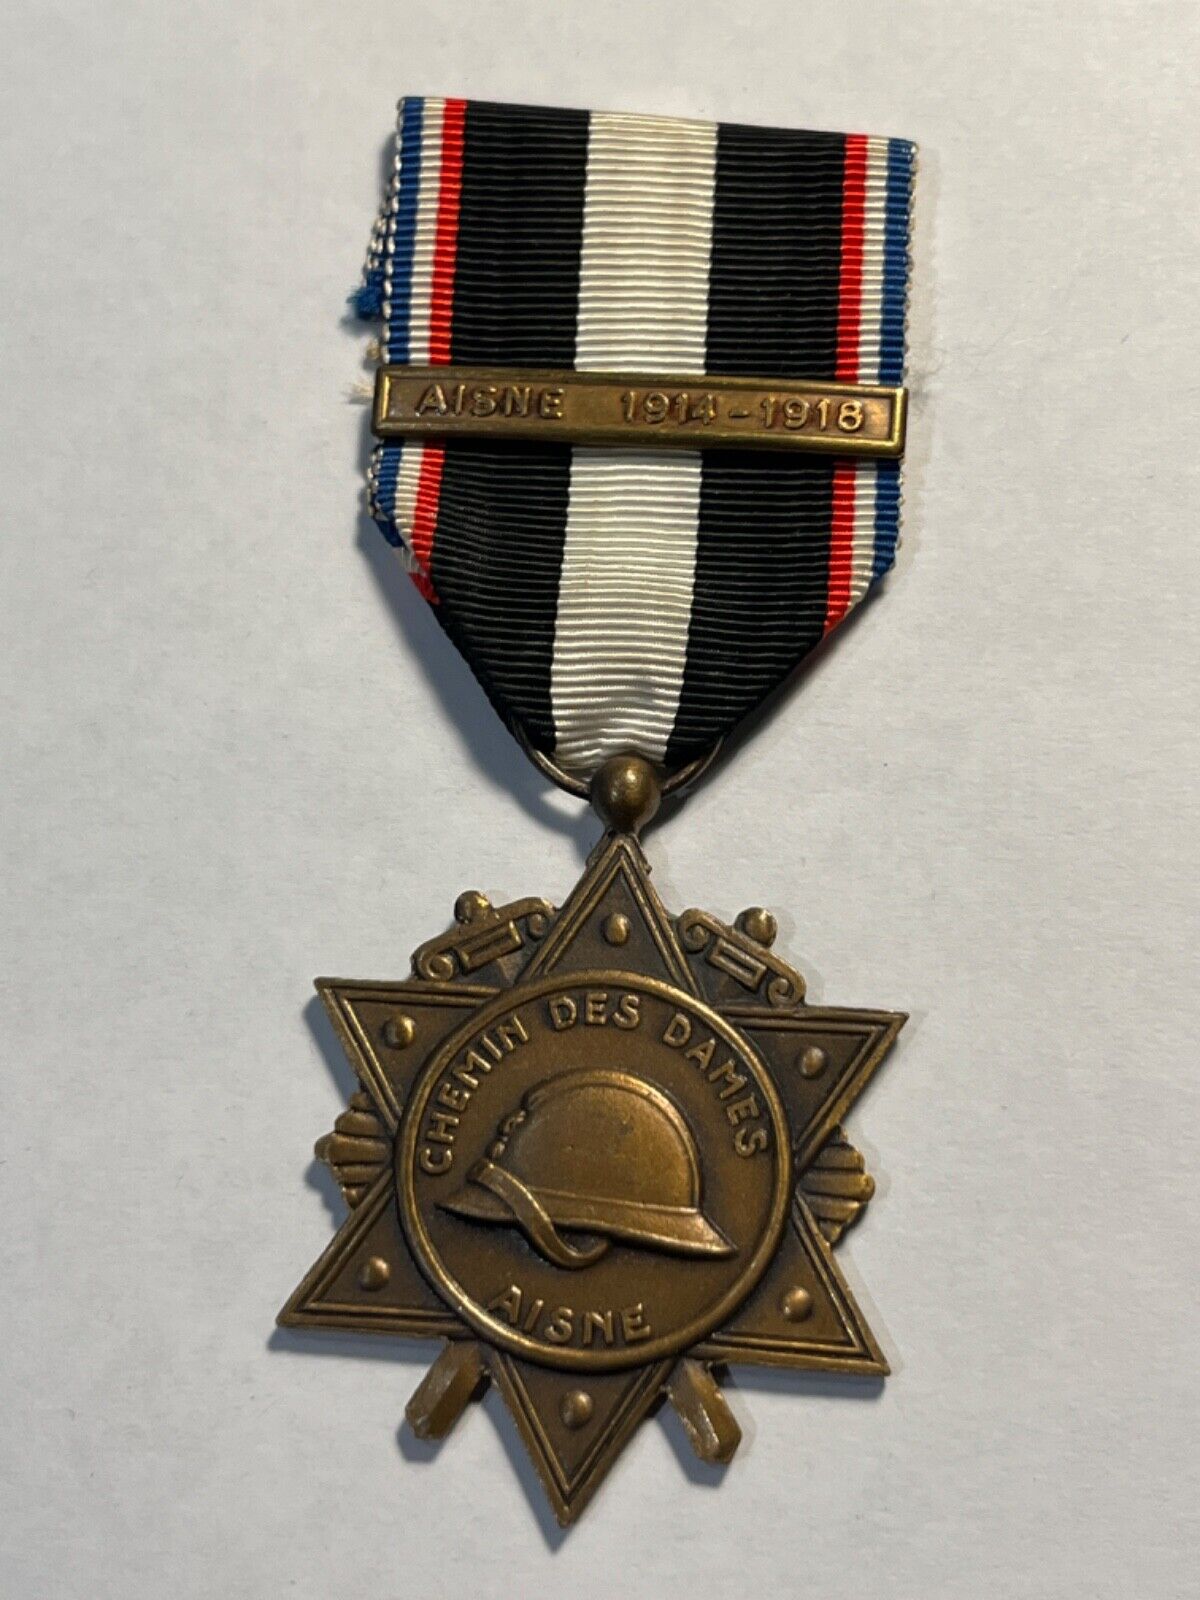 Aisne 1914-1918 Chemin des Dames Medal (158-48/P41)